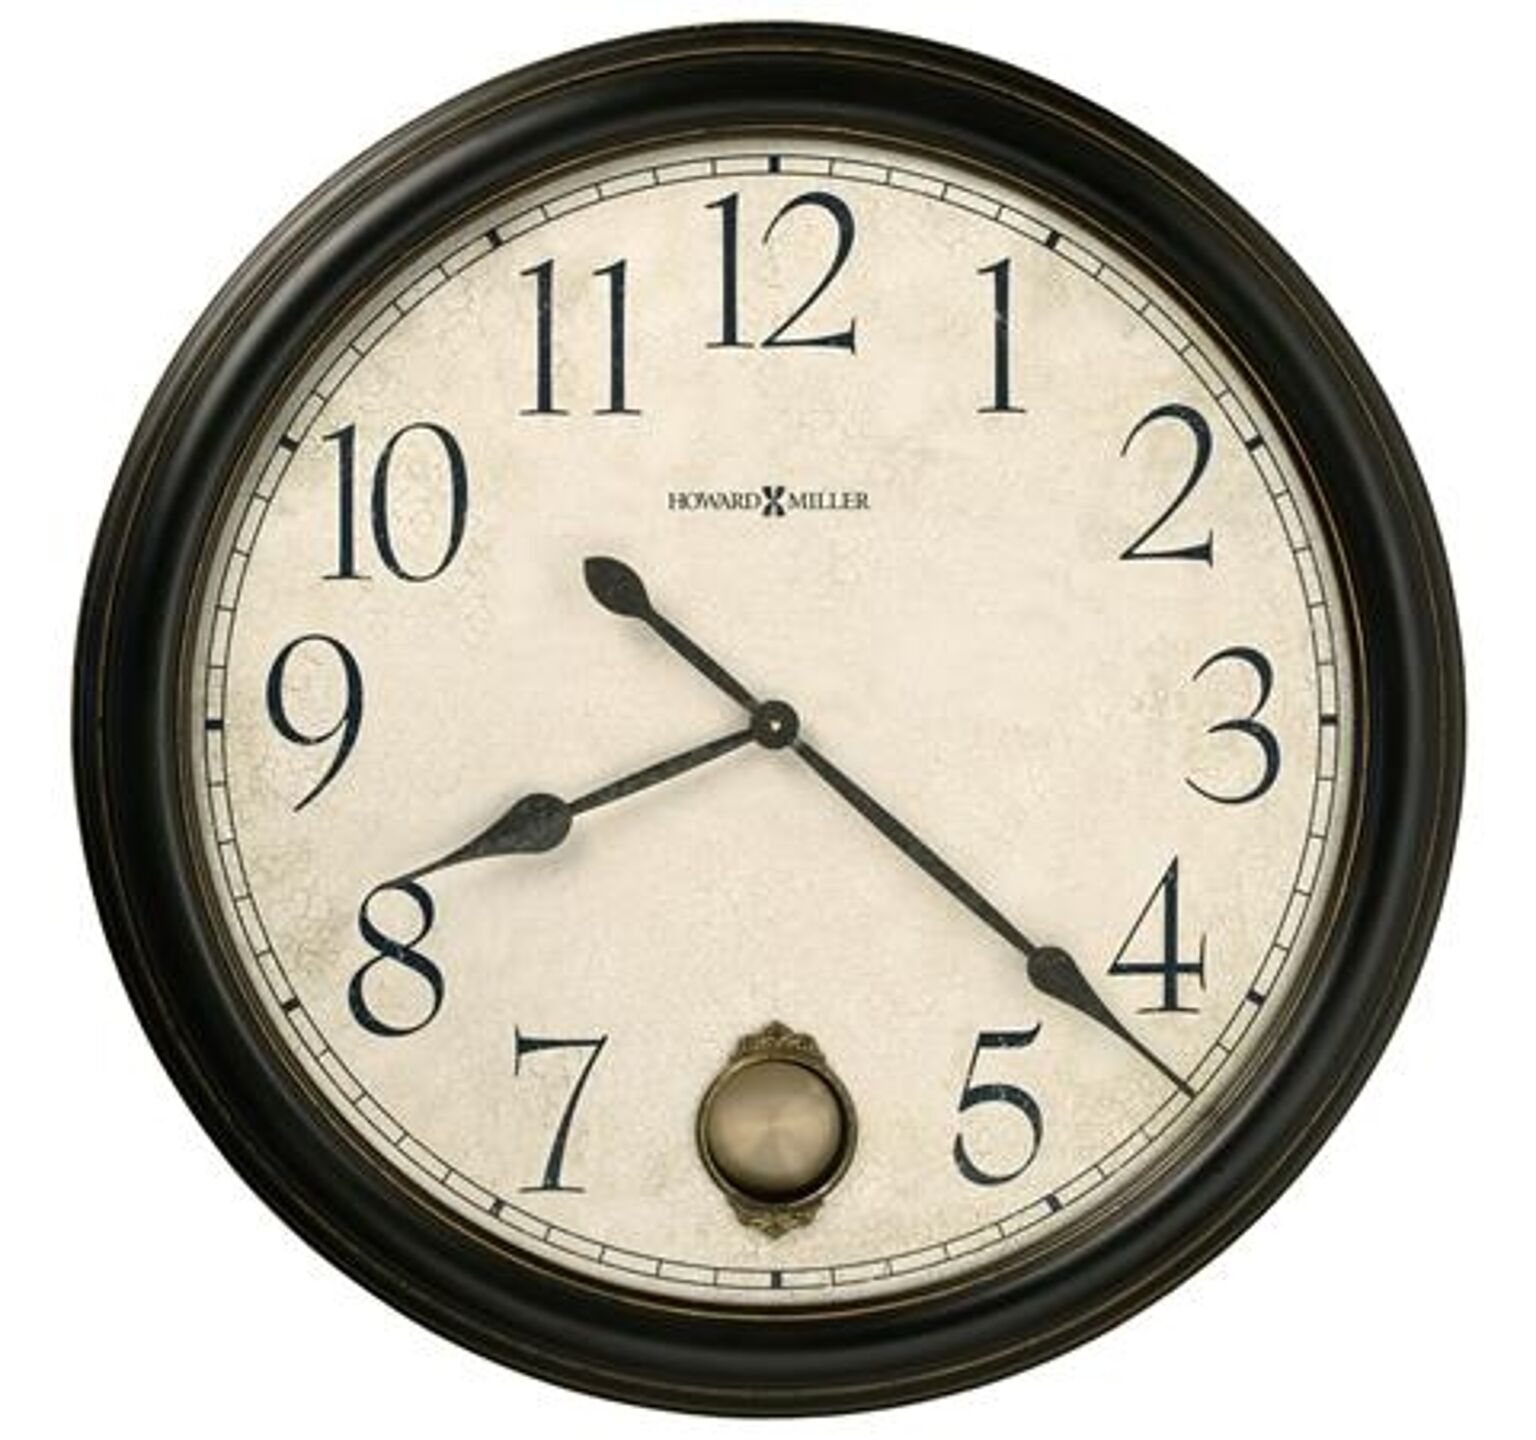 【正規輸入品】 アメリカ ハワードミラー 625-444 HOWARD MILLER GLENWOOD FALLS クオーツ（電池式） 掛け時計